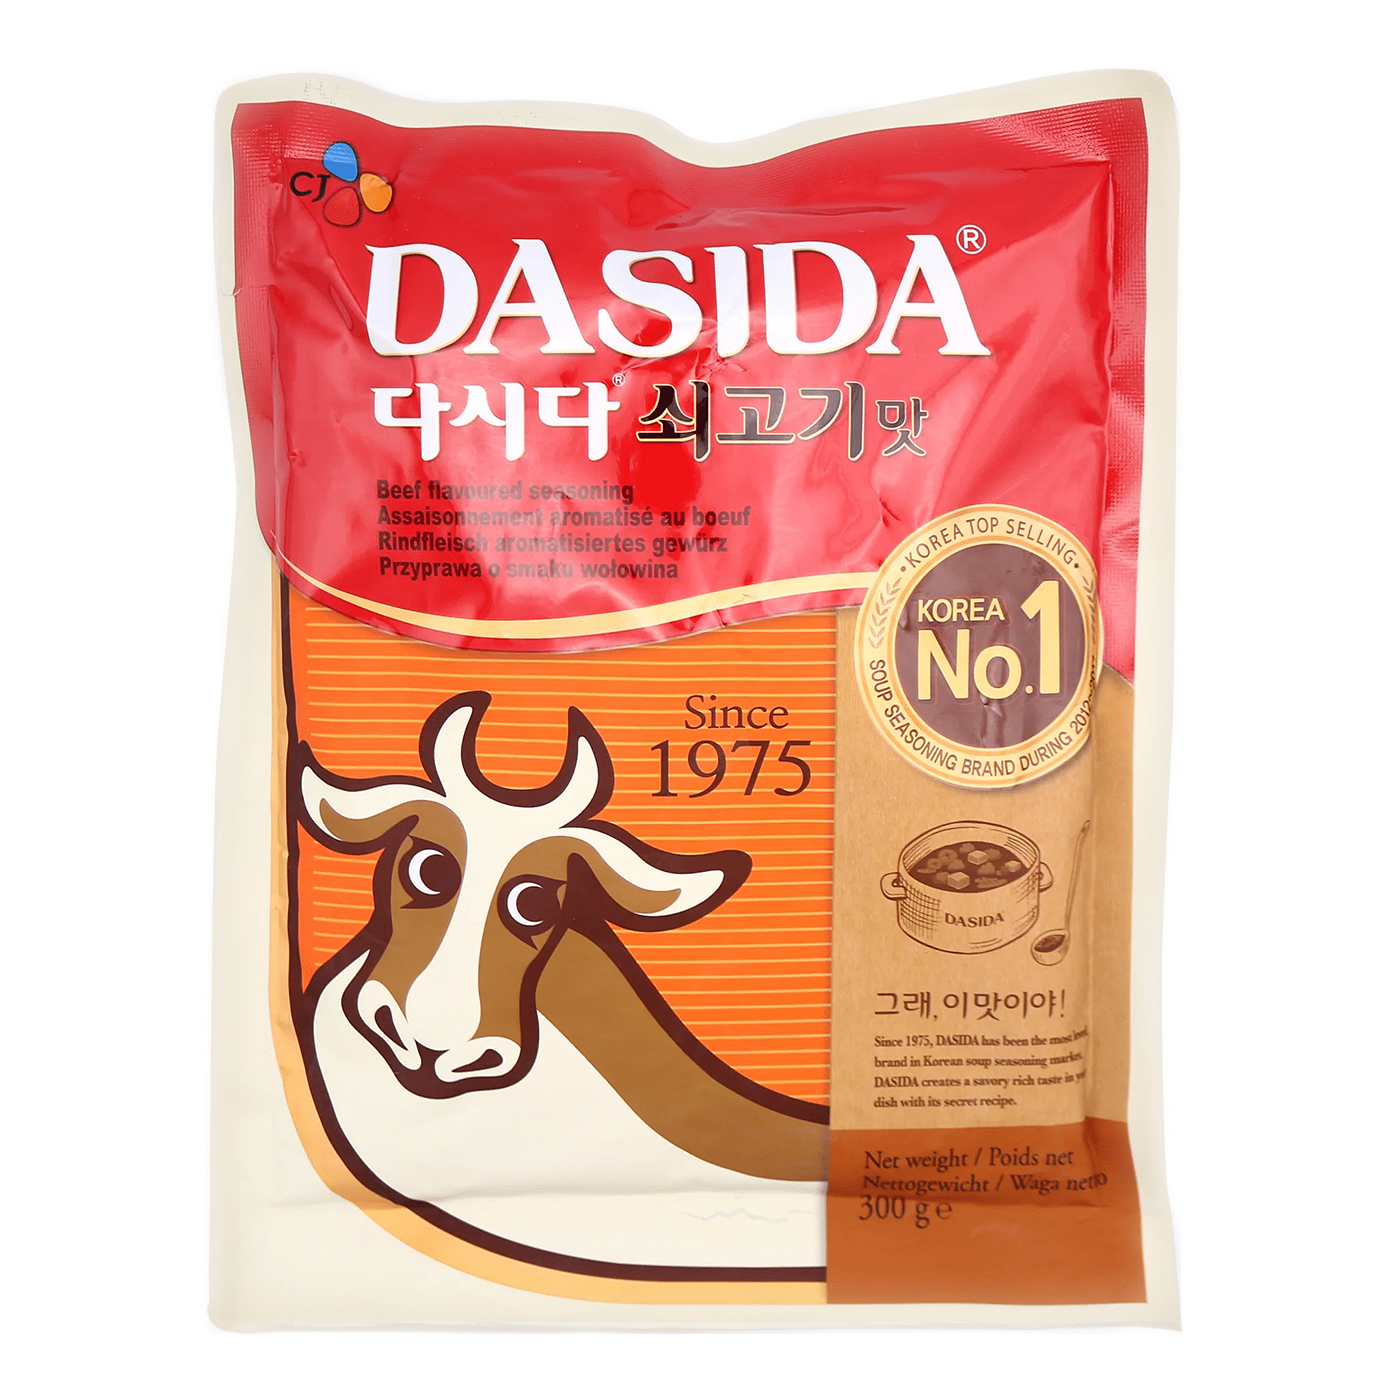 Mix de condimente - Condiment gust vita Dashida CJ 300g, asianfood.ro